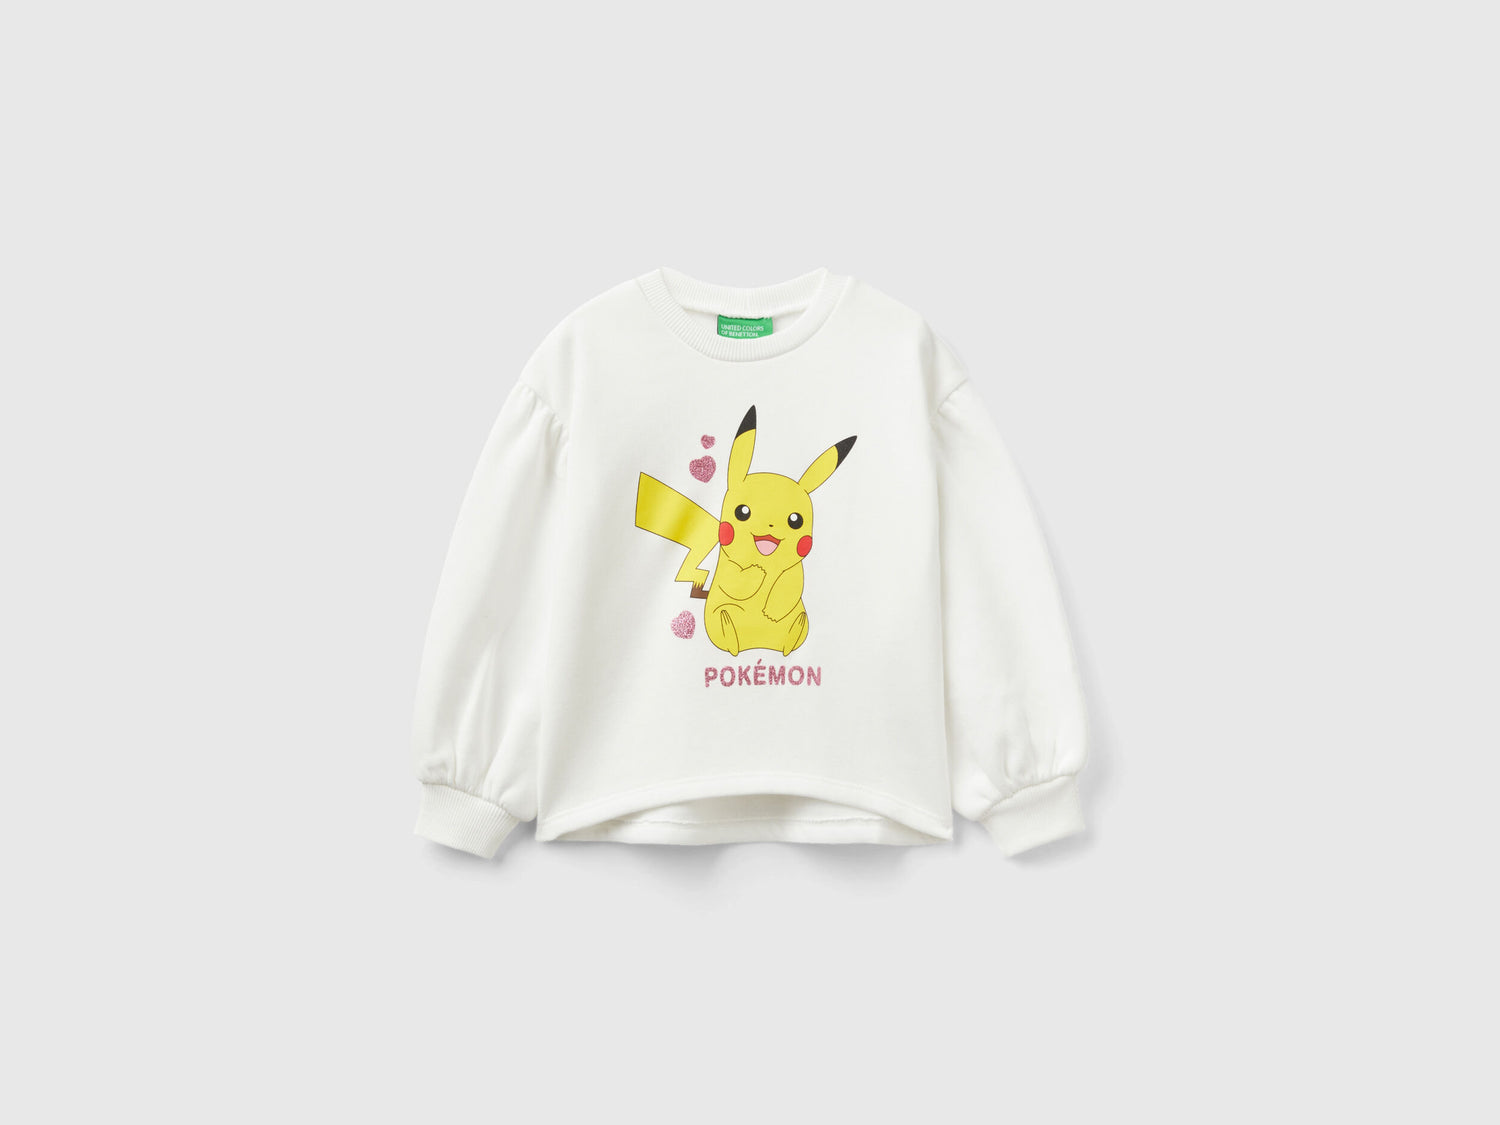 Warm Pokémon Sweatshirt With Wide Sleeves_3J73G10CU_074_01